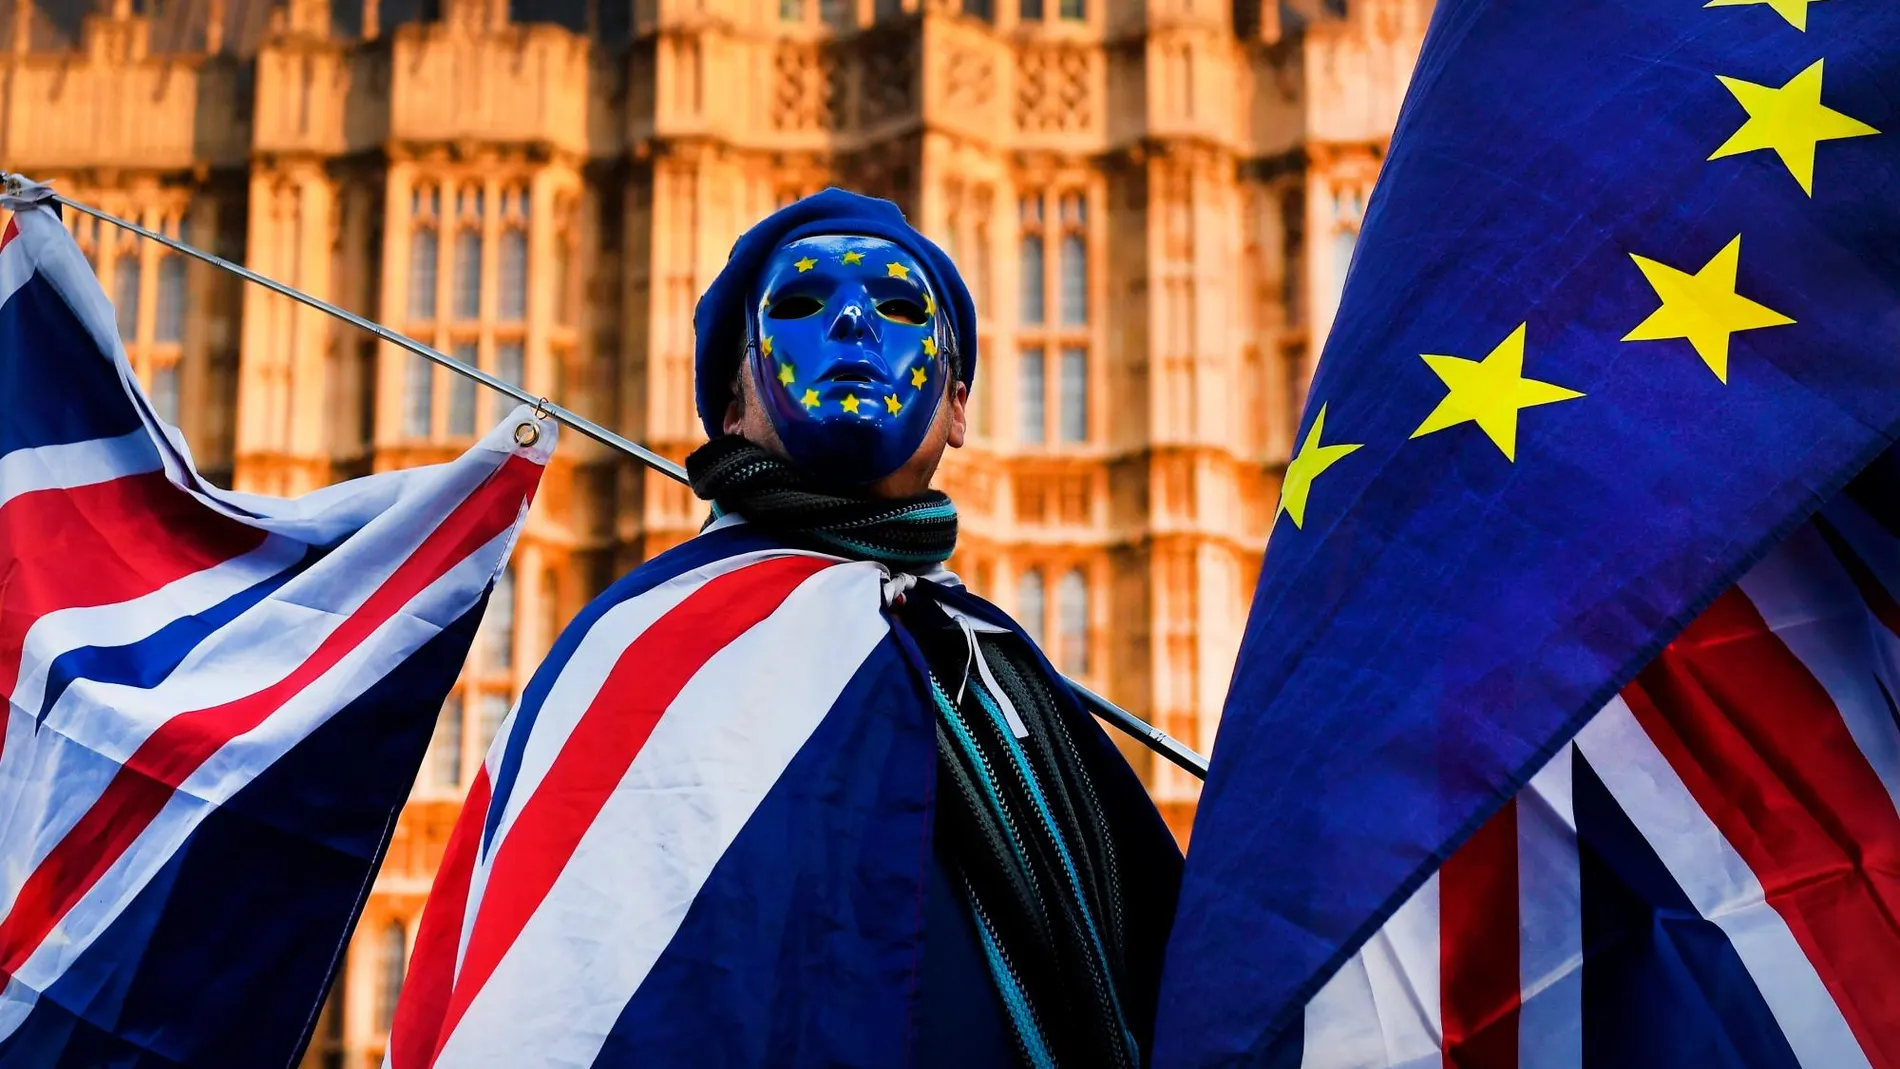 Banderas británicas y europeas frente al Parlamento de Londres / Foto: Efe